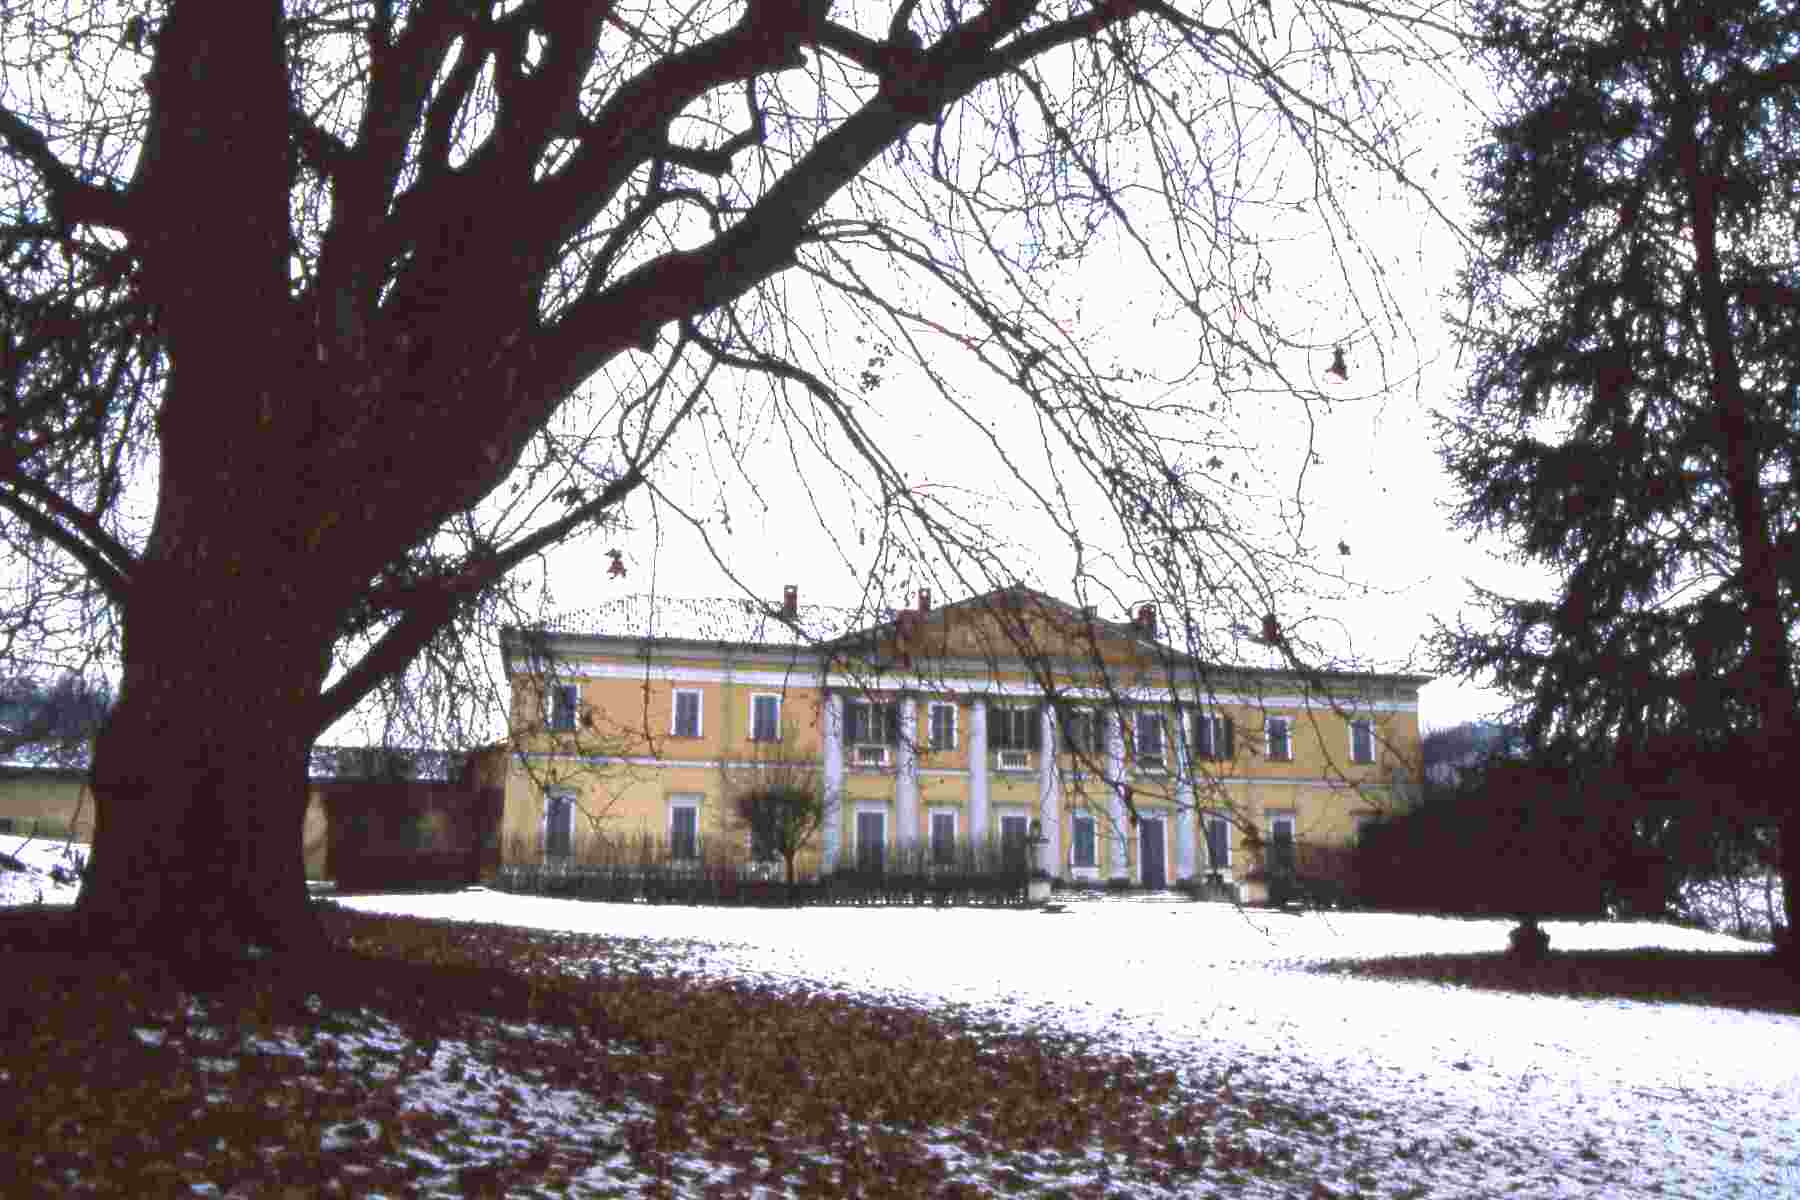 Veuta d'insieme della pregevolissima villa settecentesca di Valdeperno, circondata da uno dei parchi storici più interessanti dell'Astigiano, appartenuta ai Conti Gazelli di Rossana.